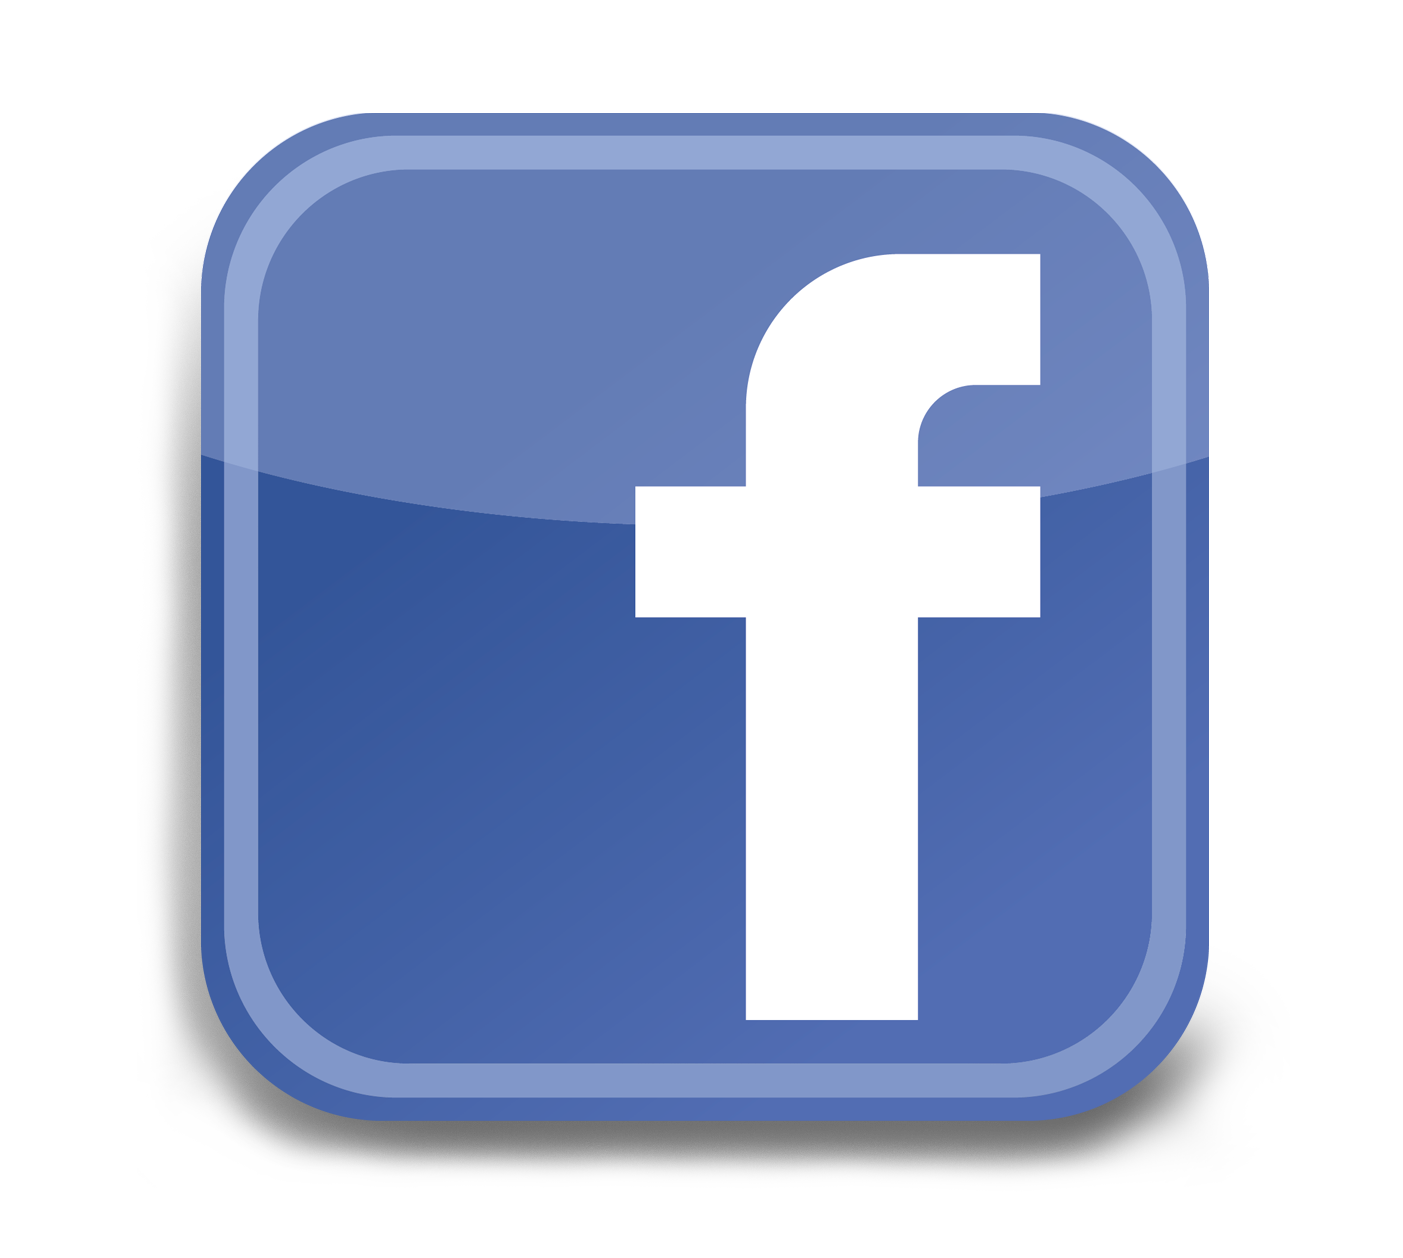 Kuvahaun tulos haulle facebook logo